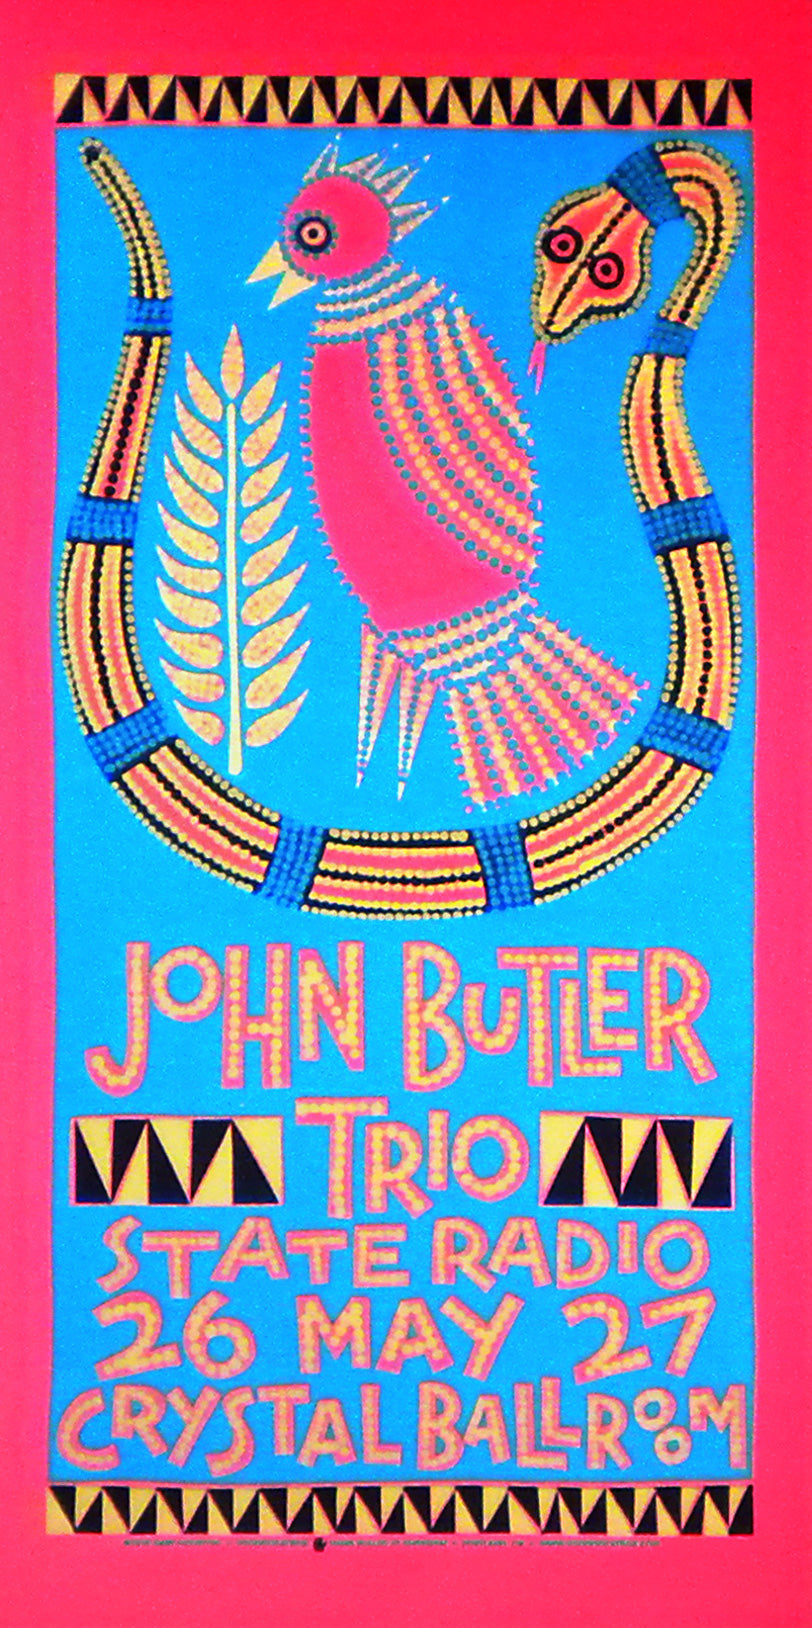 John Butler Trio #1